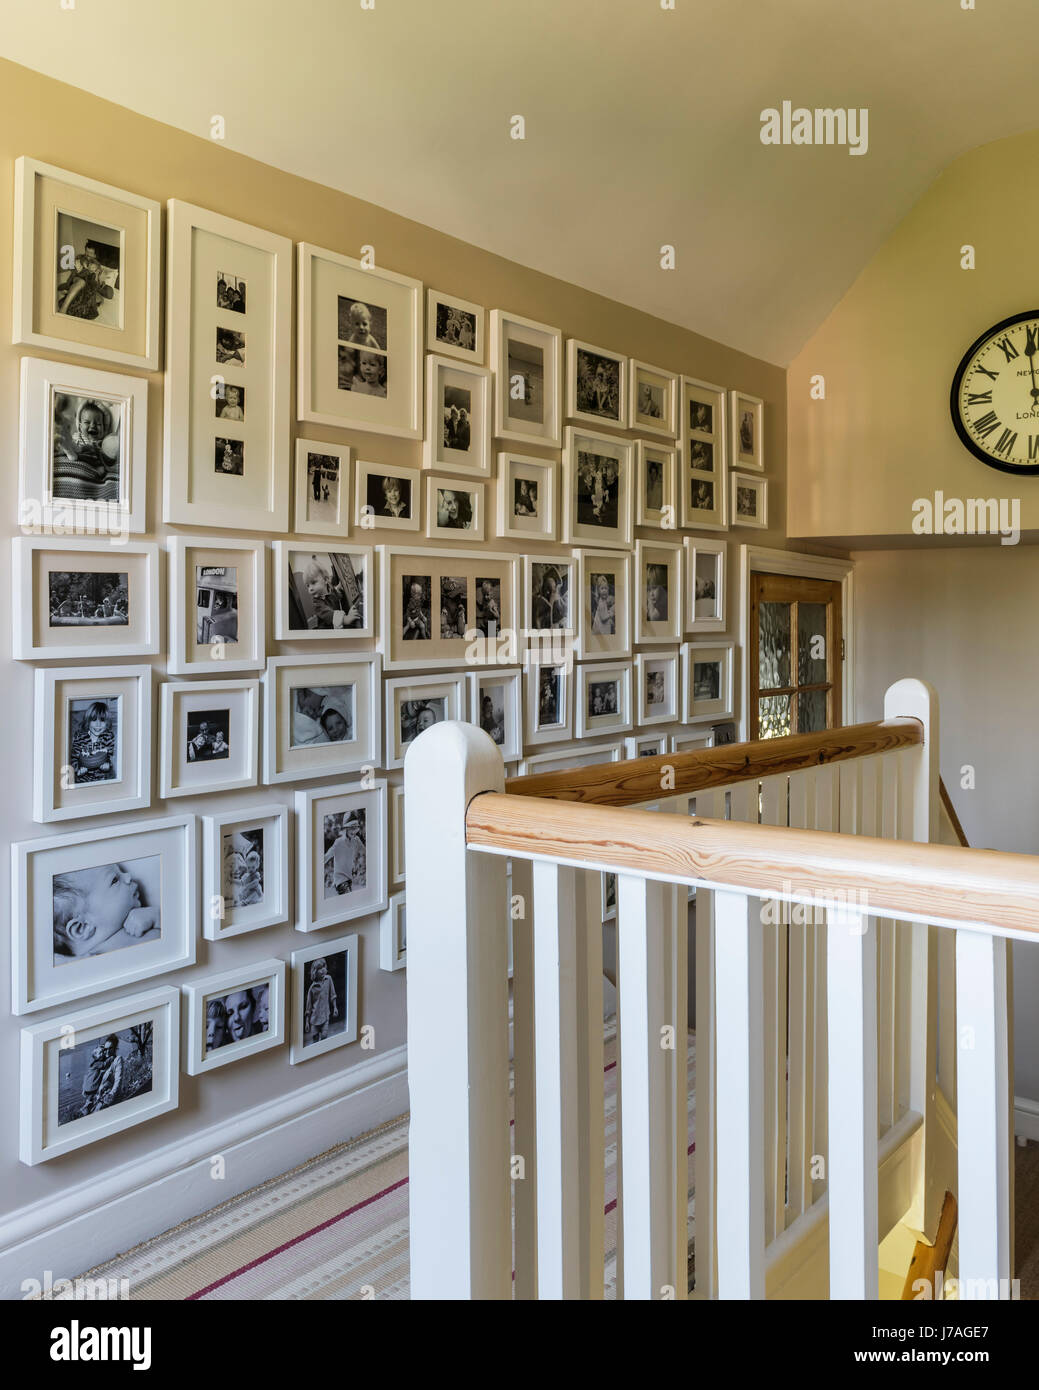 Umrahmt von schwarzen und weißen Familie Fotografie entlang Wand auf Treppe Landung Stockfoto